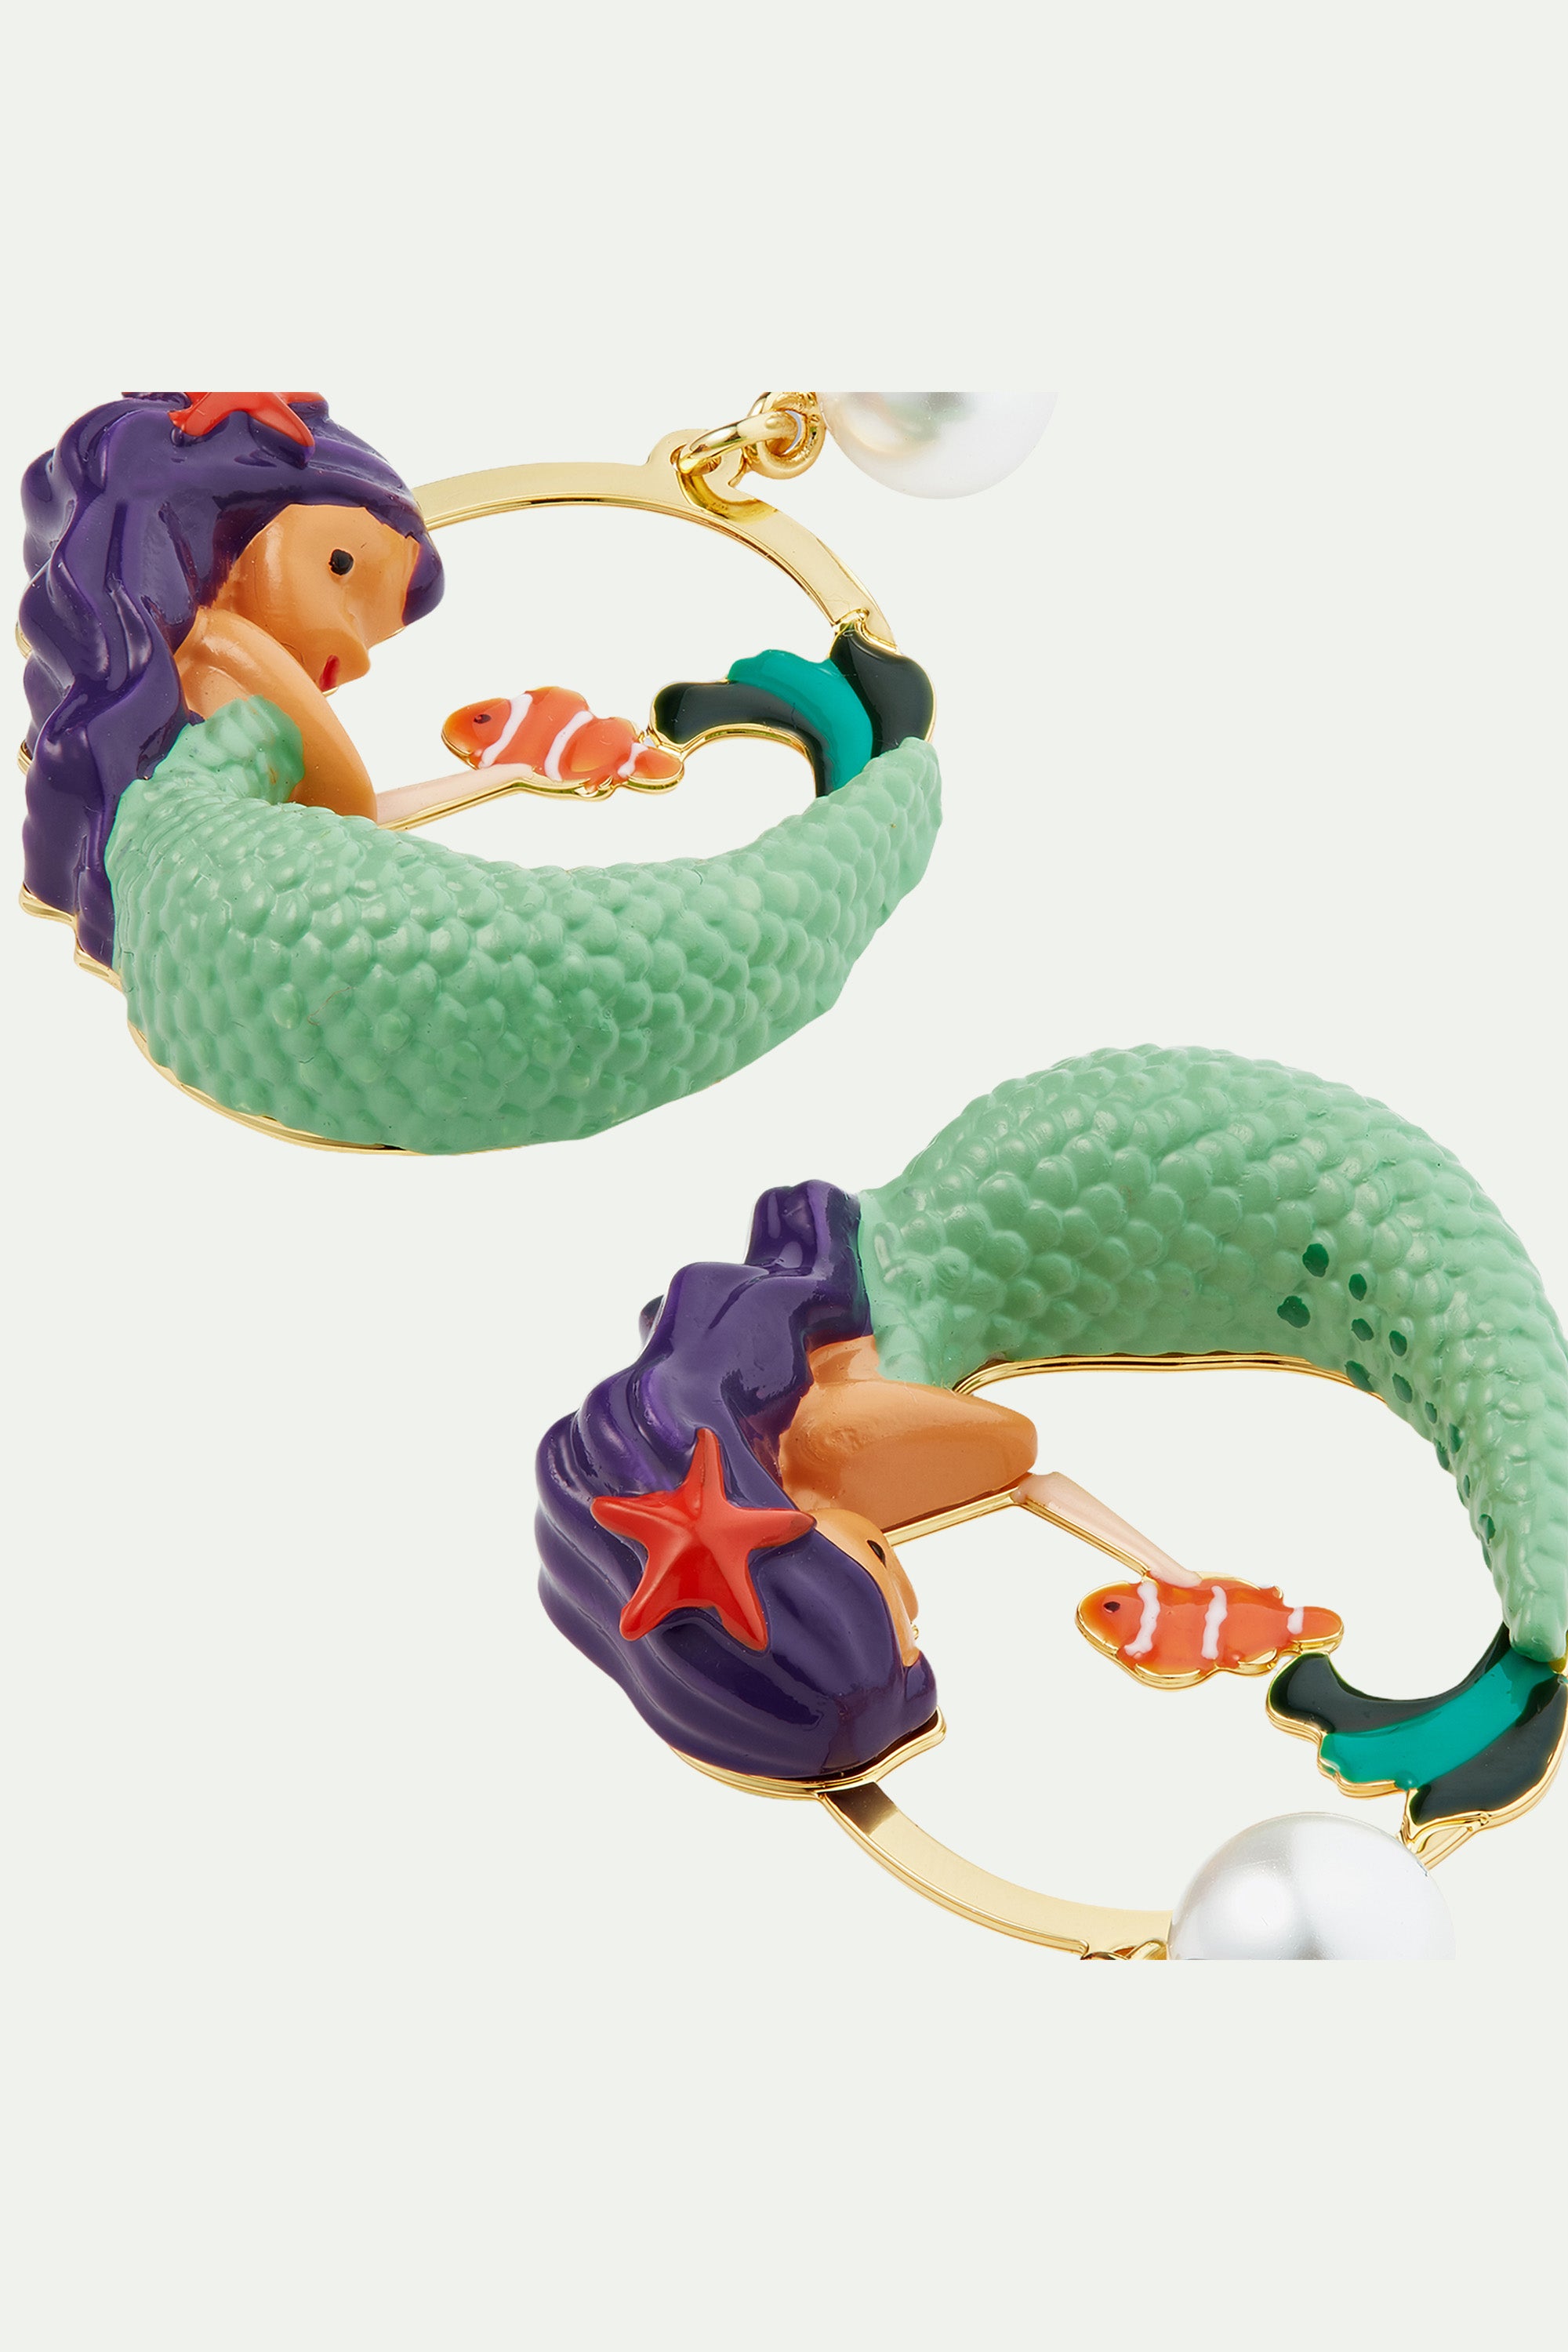 Mermaid and pearl post earrings